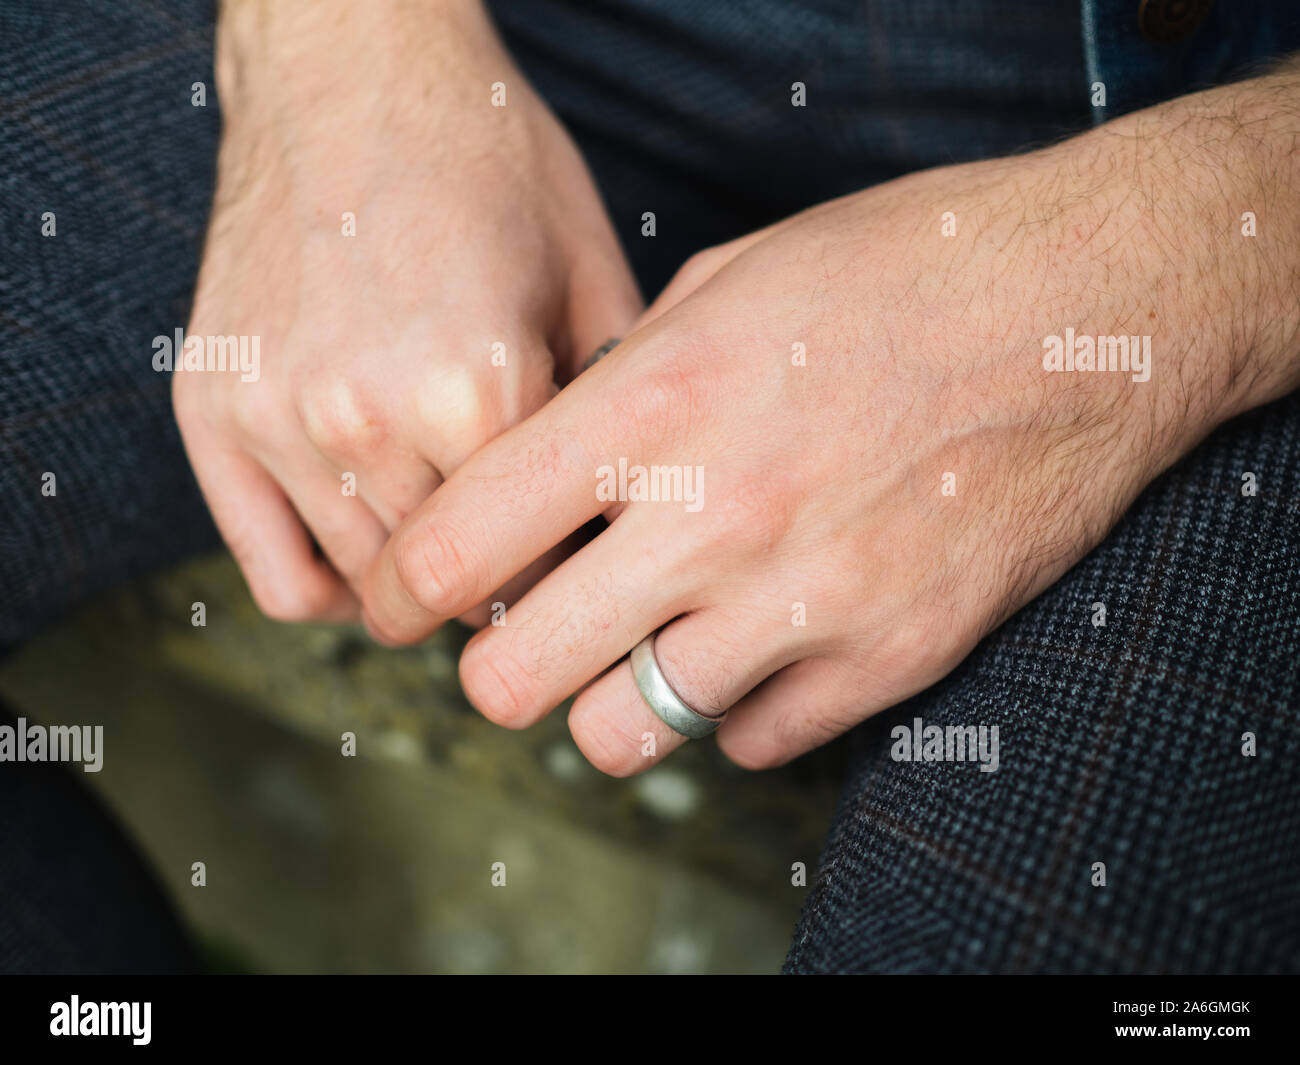 Jóvenes varones de 20-25 años aislados de manos con anillo en el dedo anular izquierdo, sentado con las manos entre las piernas. Ninguna cara visible. Foto de stock